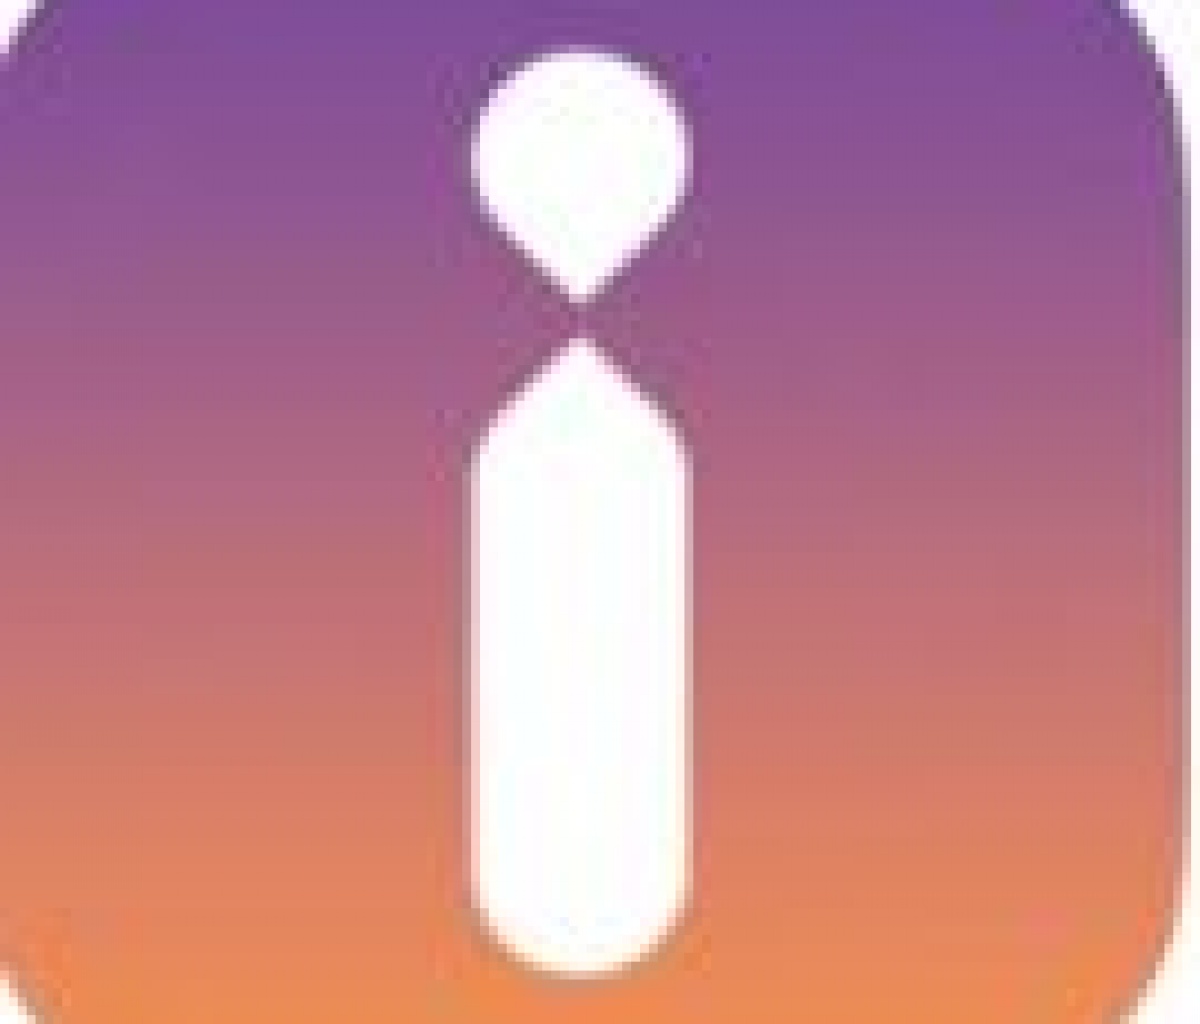 Inscape app logo